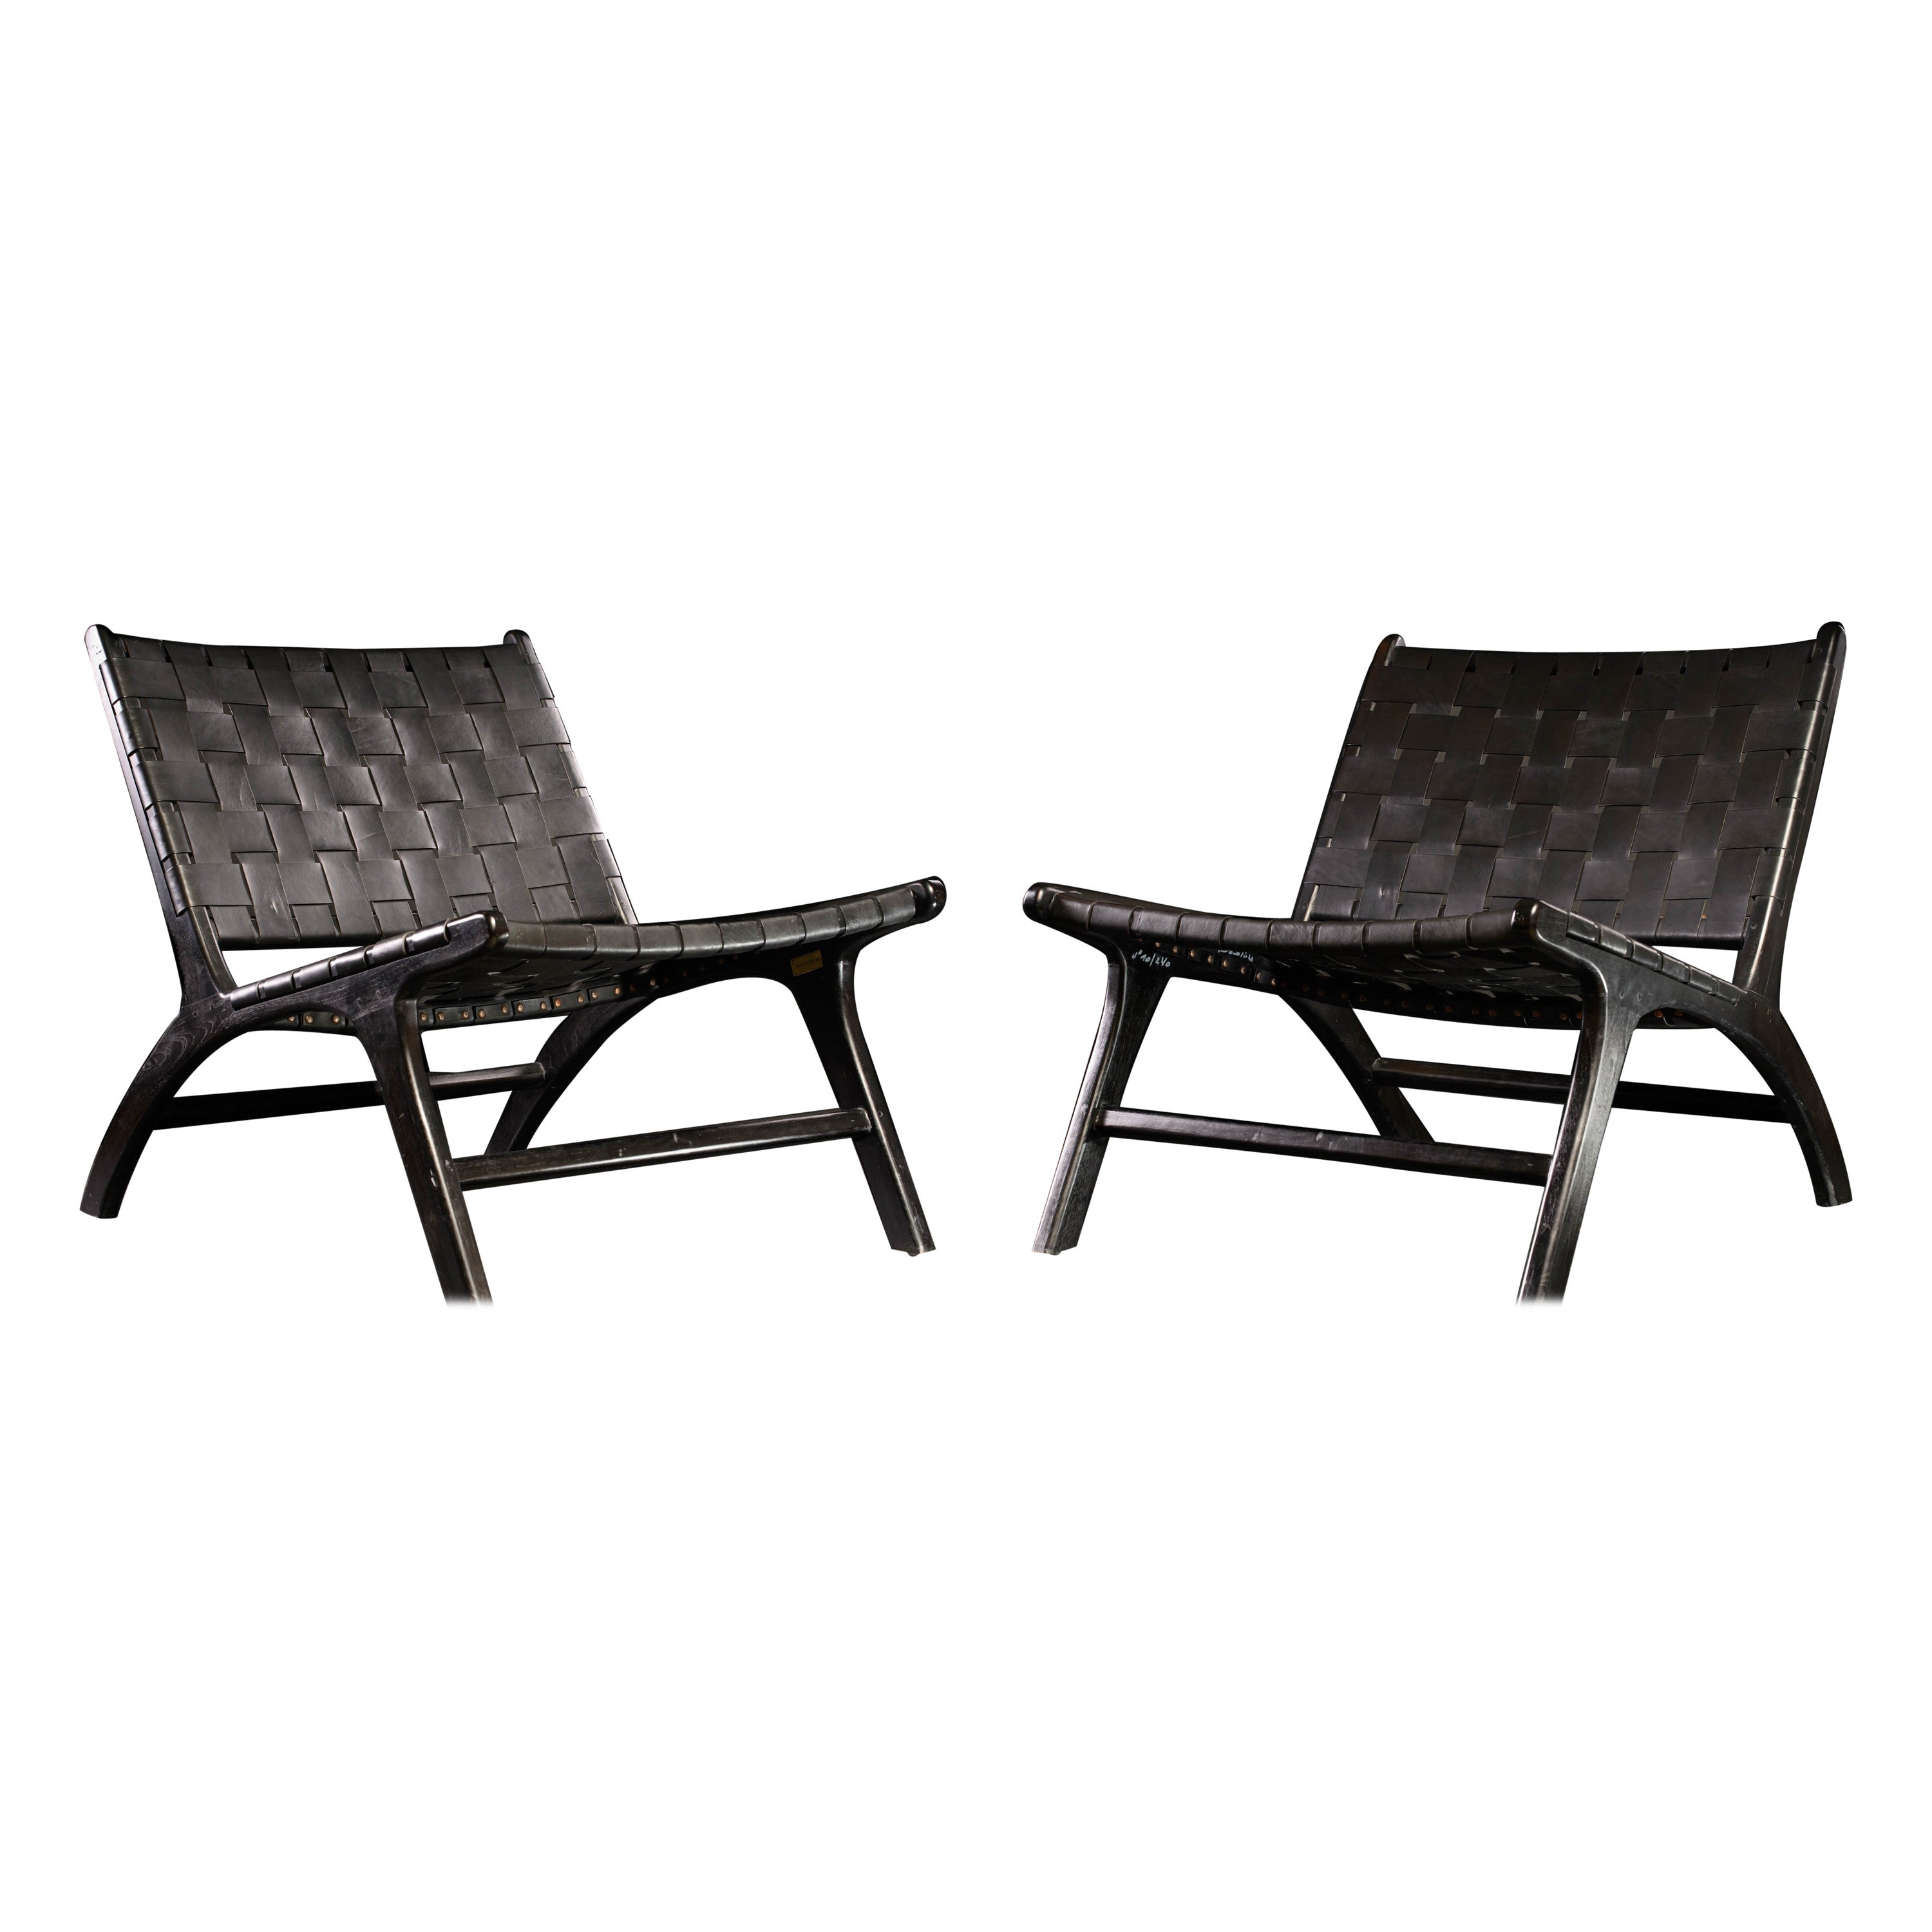 Olivier De Schrijver Design/One design edition Paire de chaises longues en cuir tressé